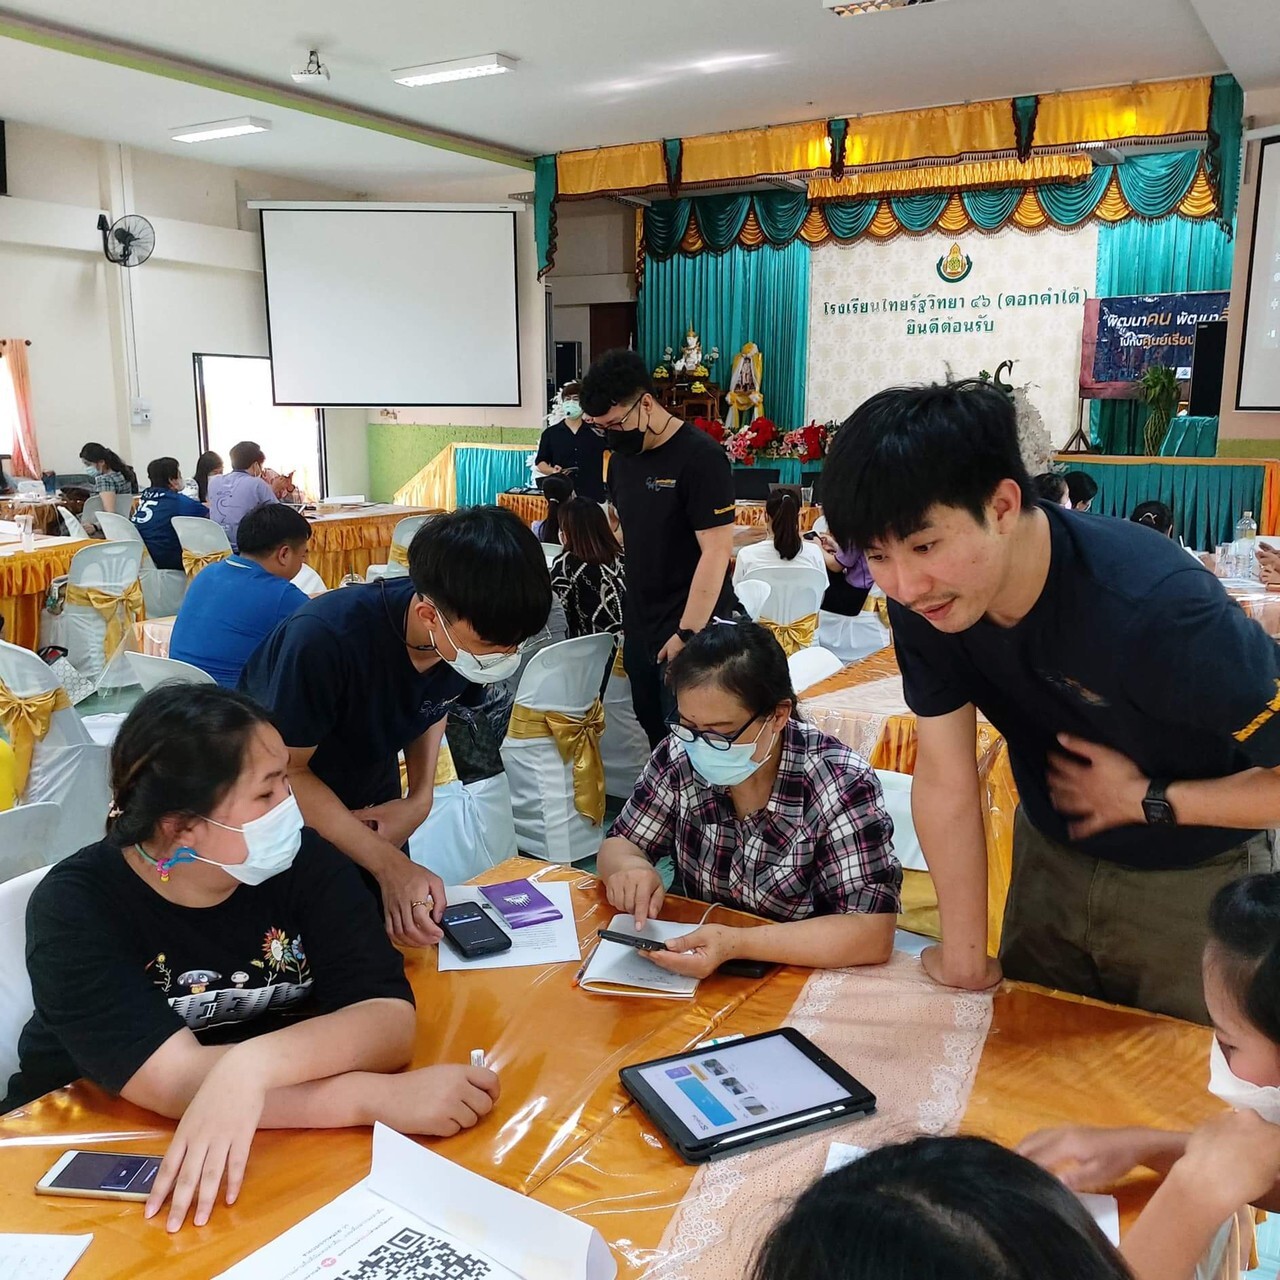 ศูนย์เรียนรู้สื่อชุมชน ม.พะเยา ร่วมกับ สถานีโทรทัศน์ ThaiPBS จัดอบรมกระบวนการเรียนรู้การเป็นนักข่าวพลเมือง จังหวัดพะเยา